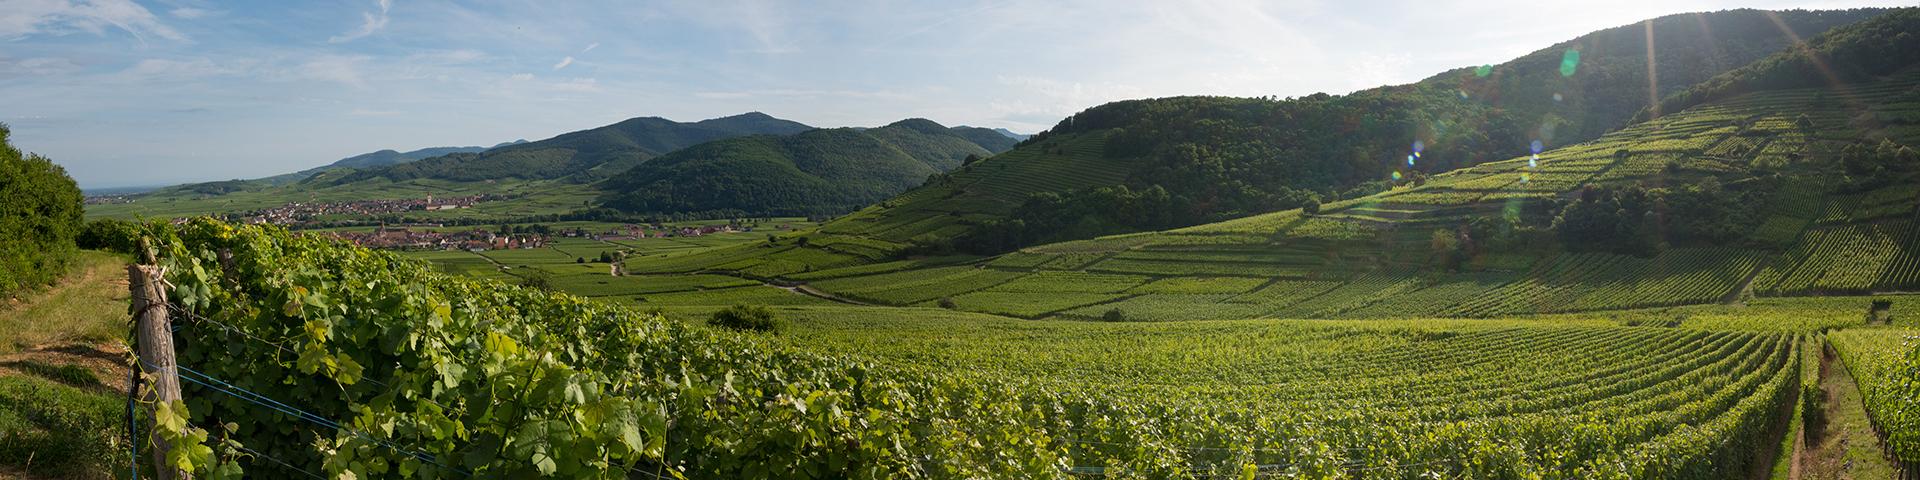 Vue panoramique du vignoble d'Alsace, Vosges